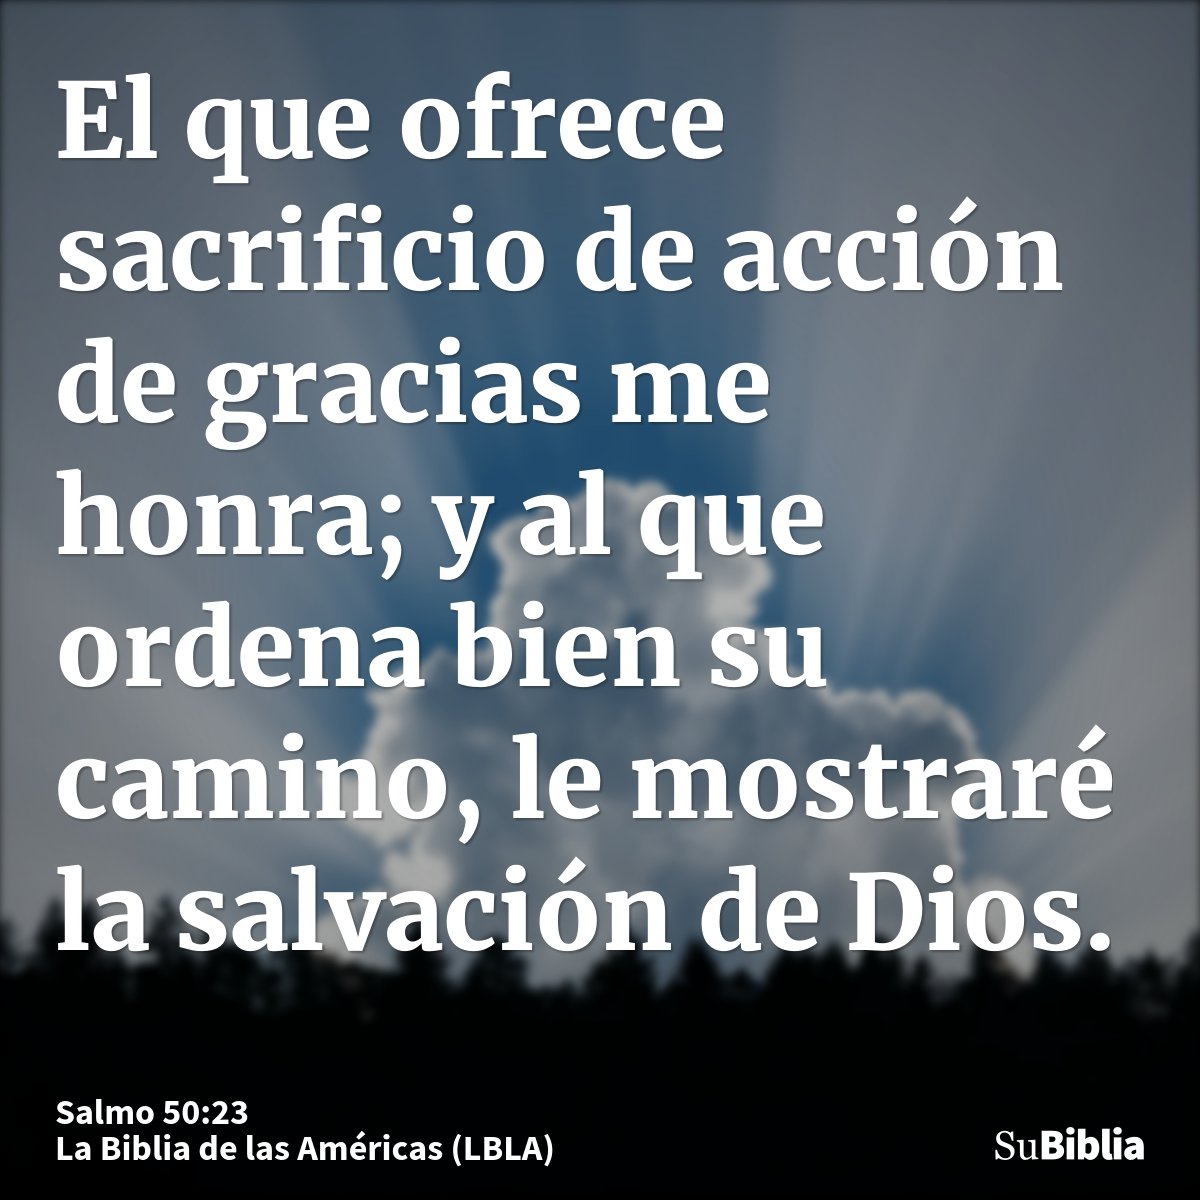 El que ofrece sacrificio de acción de gracias me honra; y al que ordena bien su camino, le mostraré la salvación de Dios.